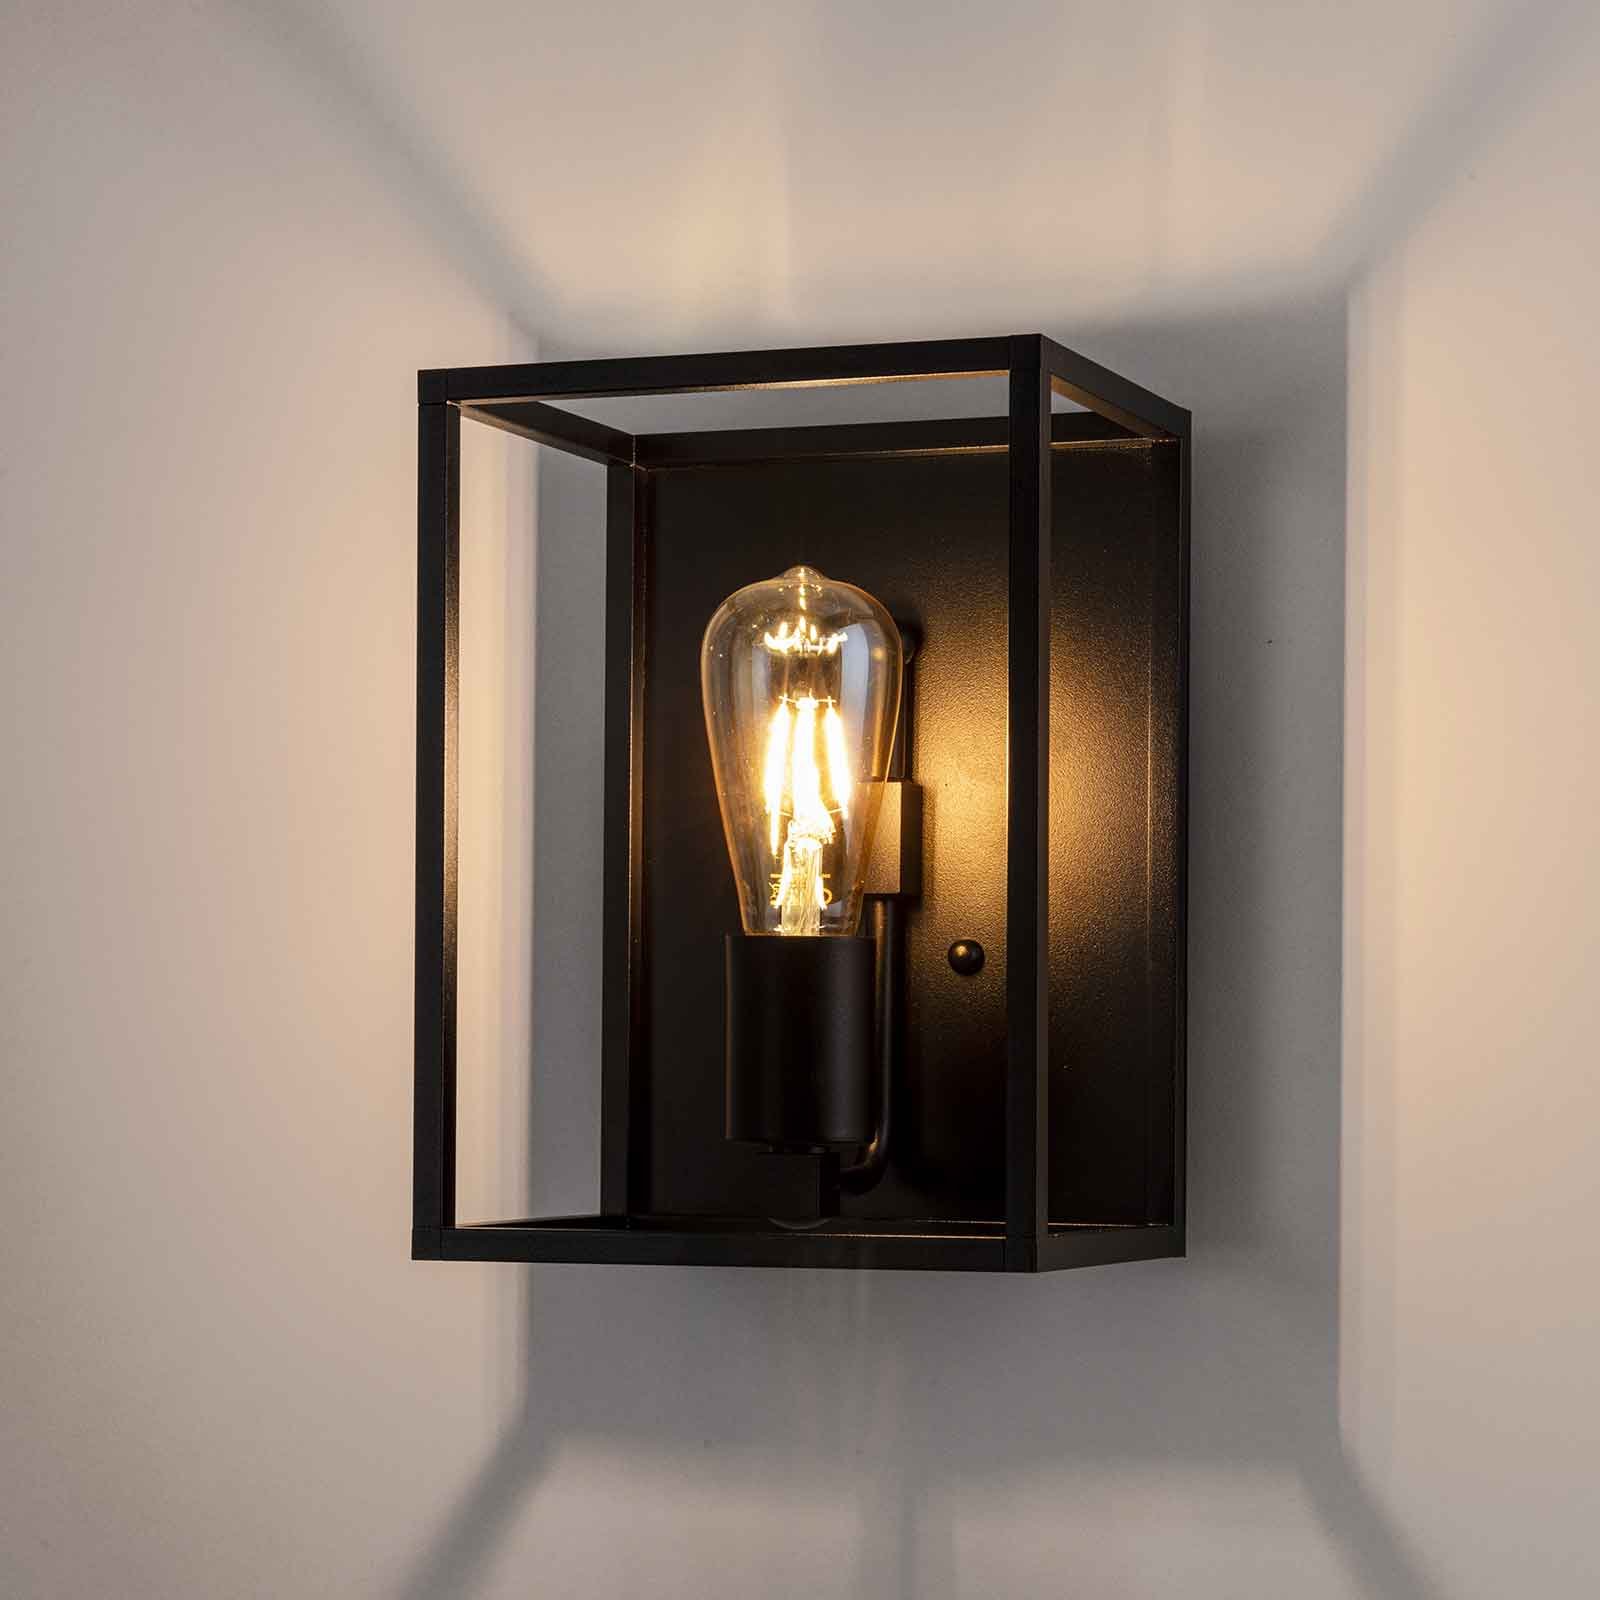 Sieninis šviestuvas "Cubic³ 3382", juodas, plotis 20 cm